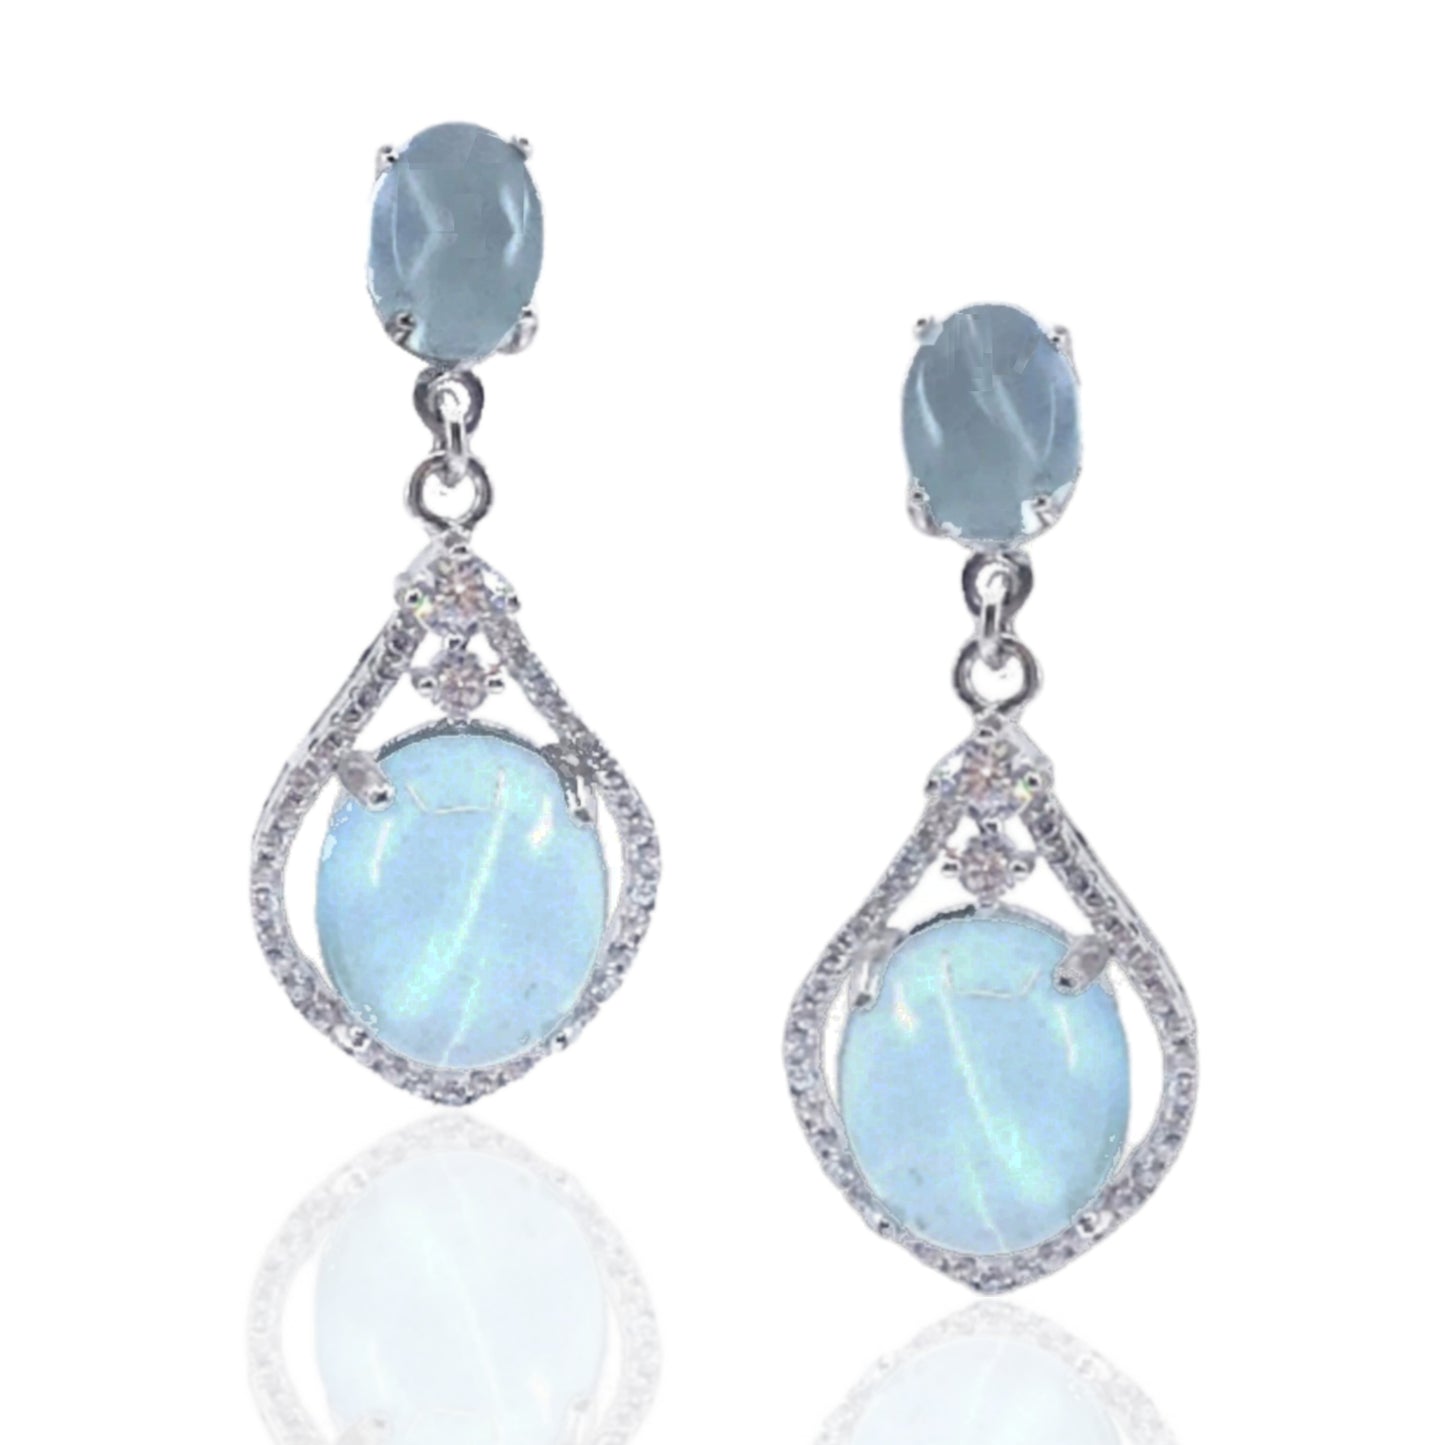 Sterling Silver Teardrop Earrings with Oval Stones - HK Jewels